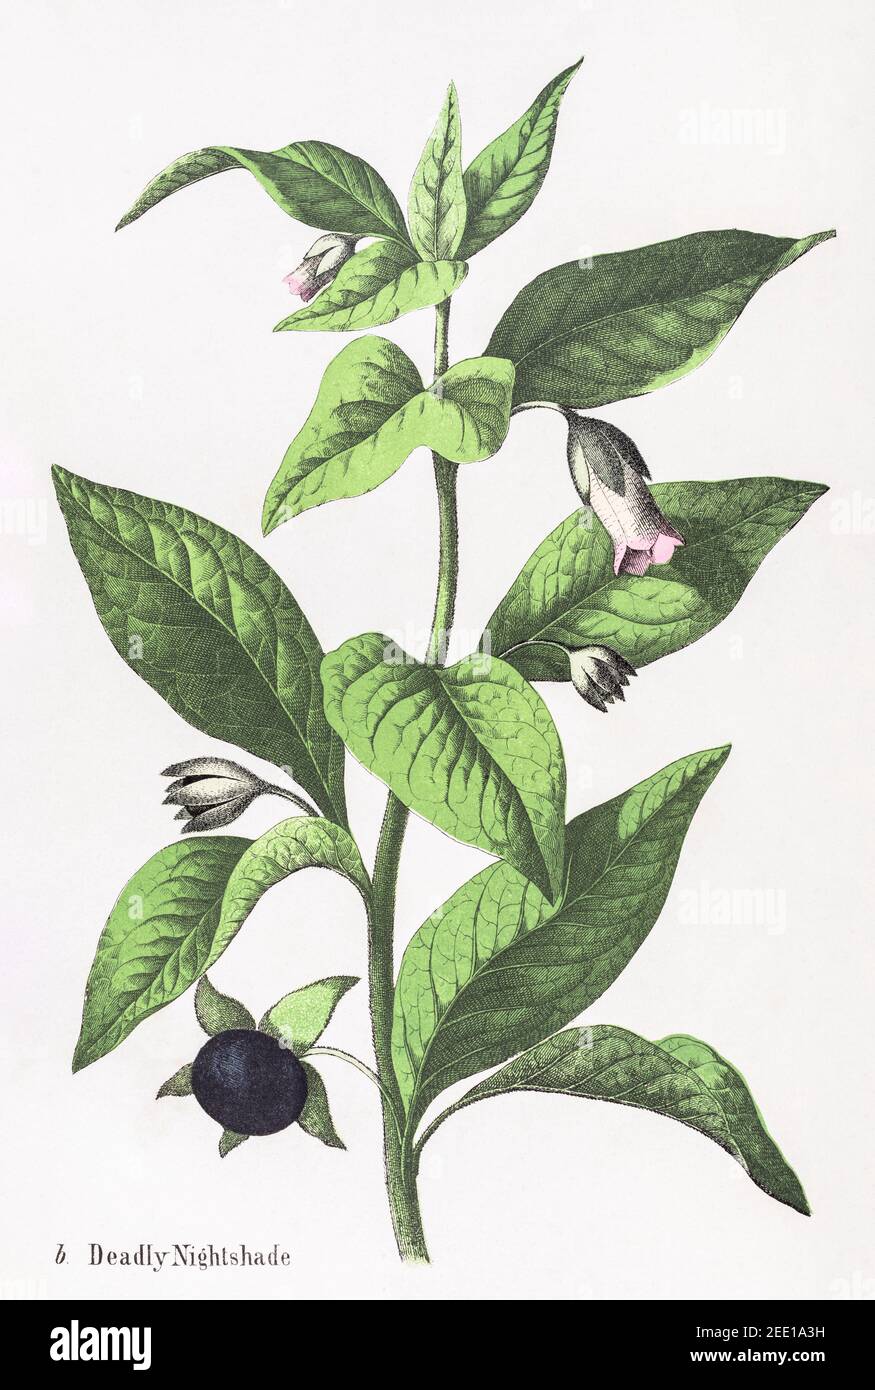 Restaurata digitalmente XIX secolo illustrazione botanica vittoriana di mortale Nightshade / Atropa belladonna. Vedere le note per le informazioni sulla sorgente e sul processo. Foto Stock